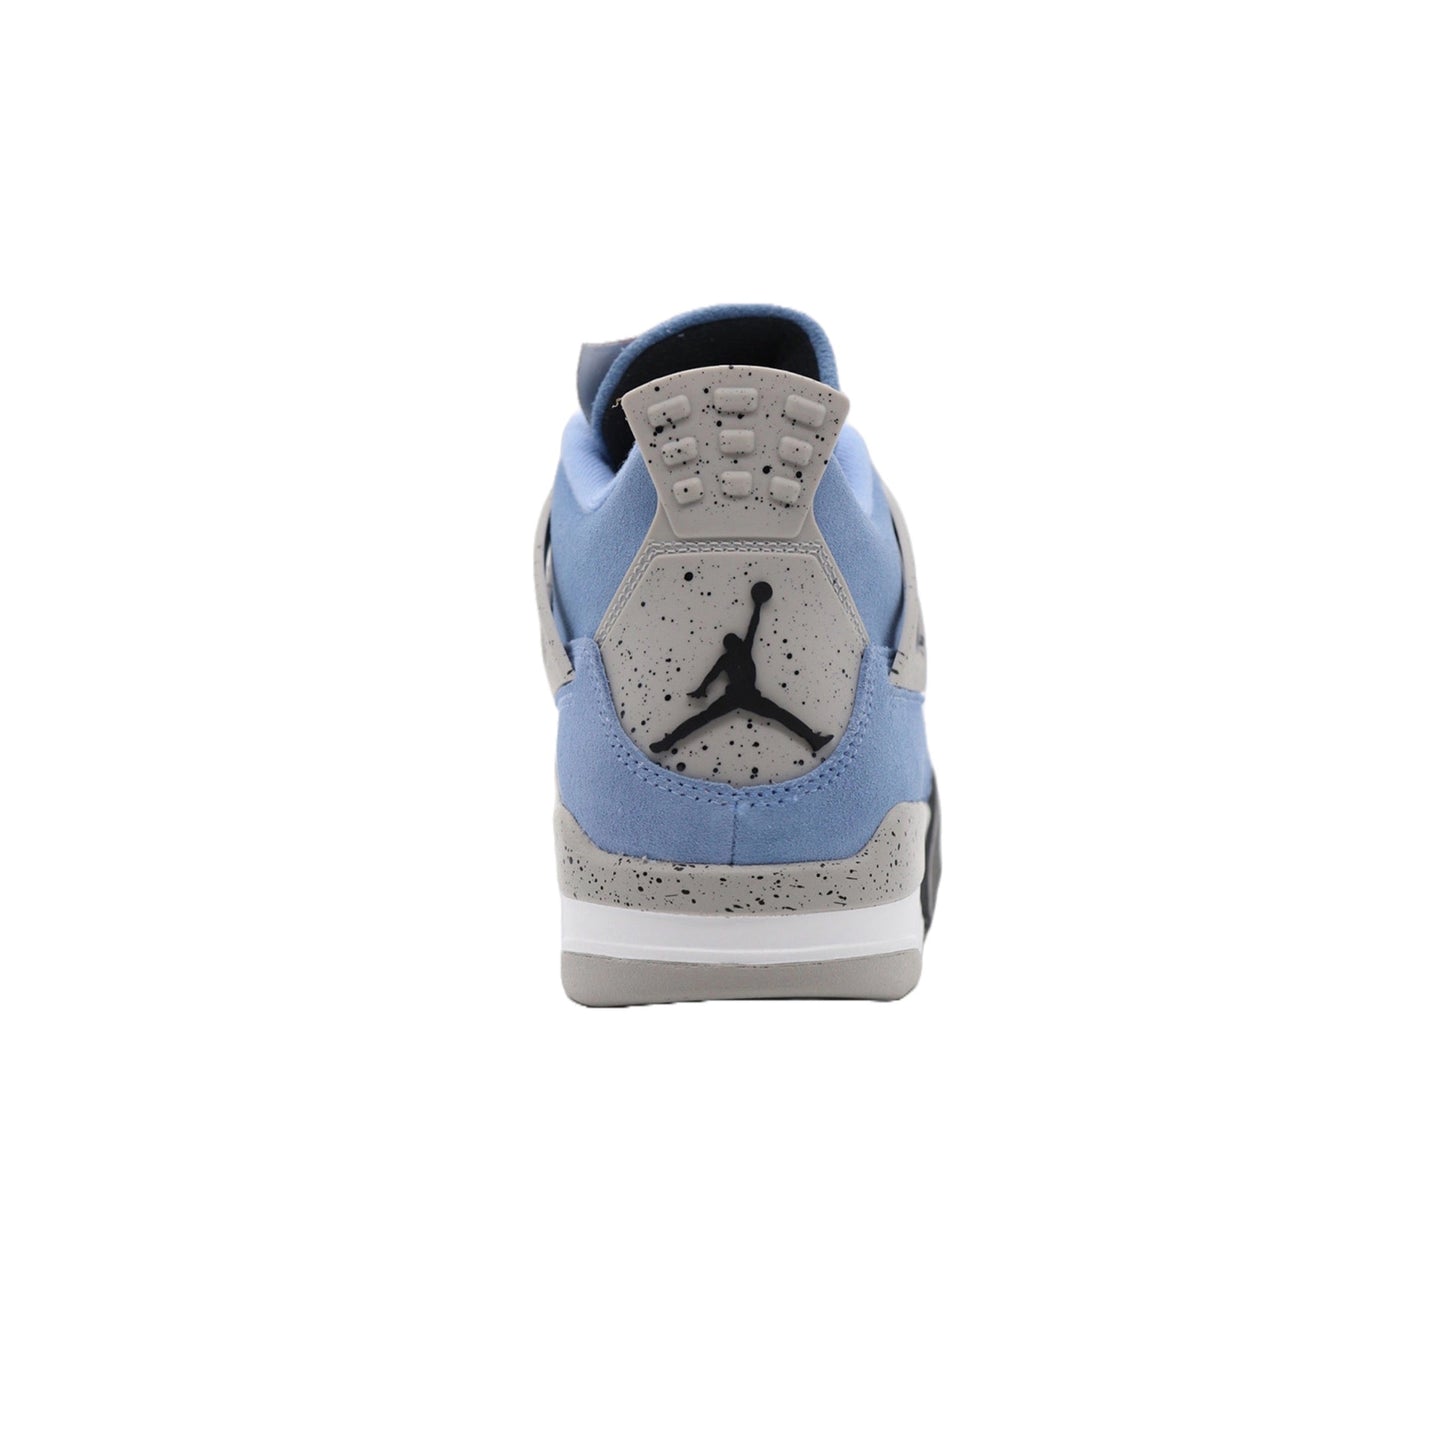 Air Jordan 4, University Blue